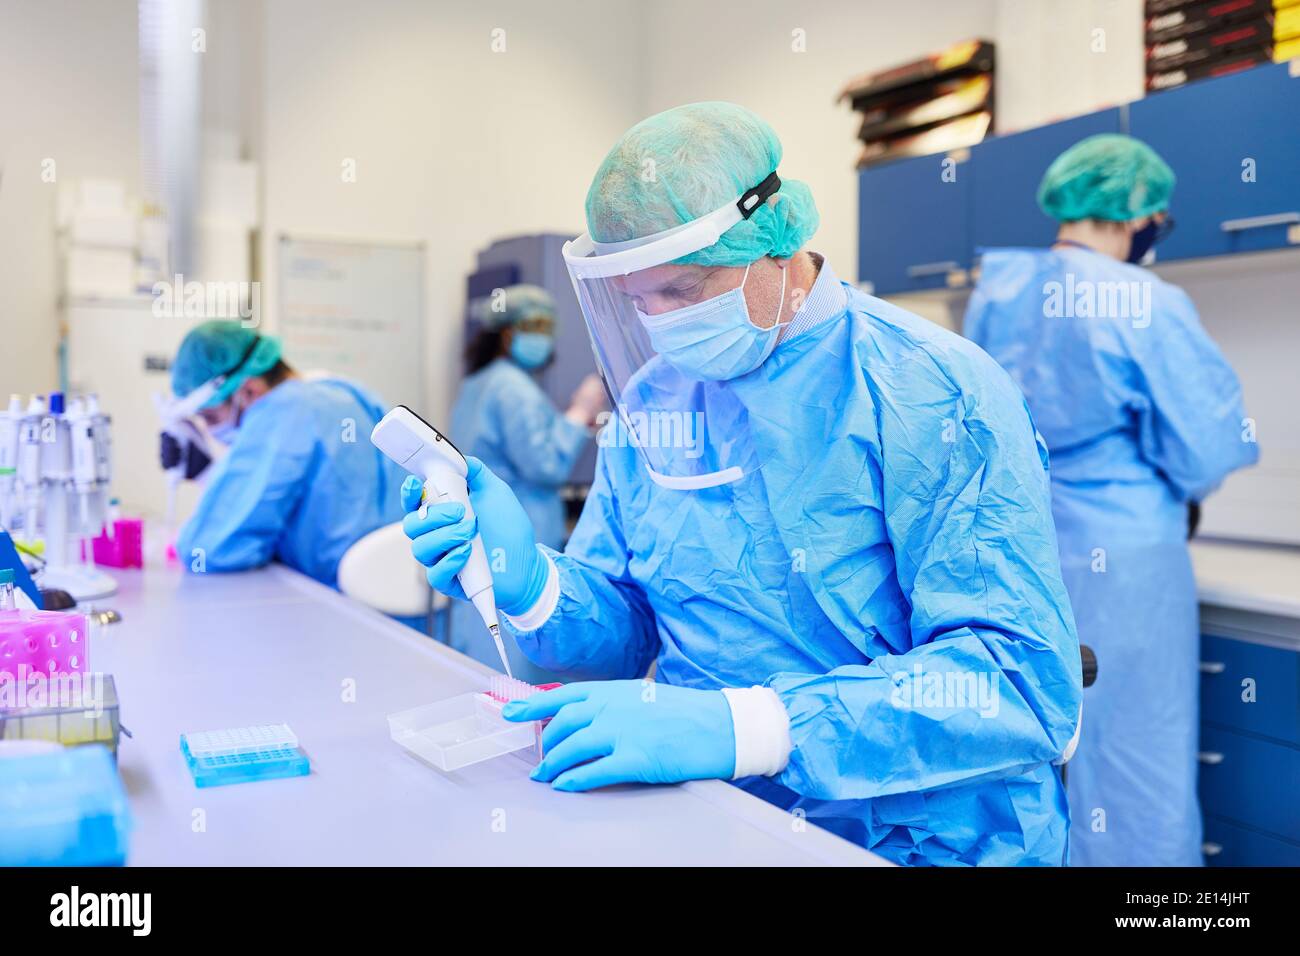 Il team medico analizza insieme i campioni di test Covid-19 in laboratorio durante la pandemia del coronavirus Foto Stock